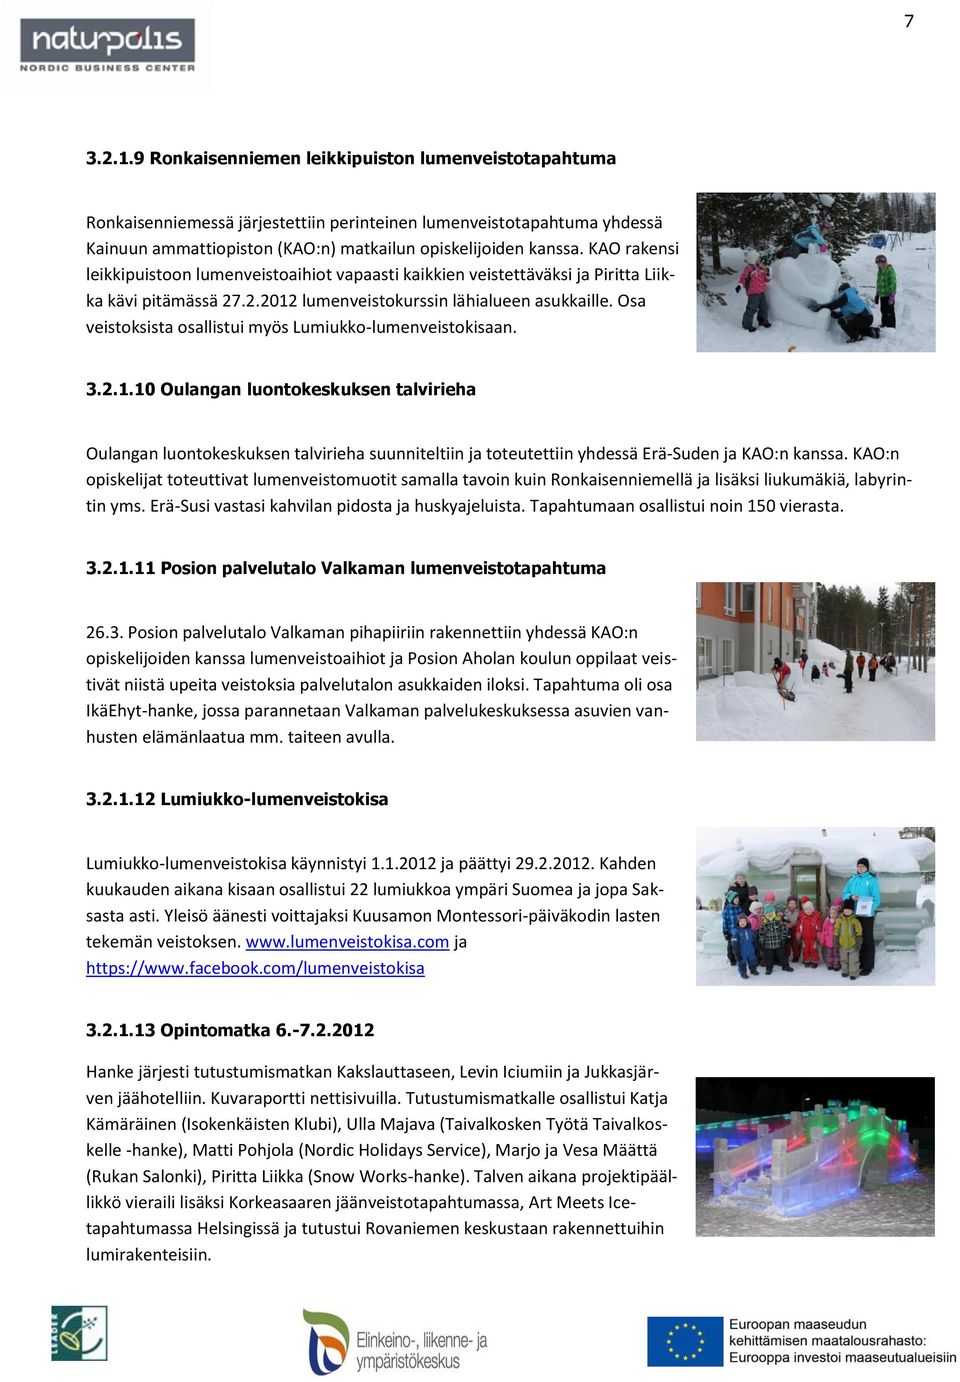 Osa veistoksista osallistui myös Lumiukko-lumenveistokisaan. 3.2.1.